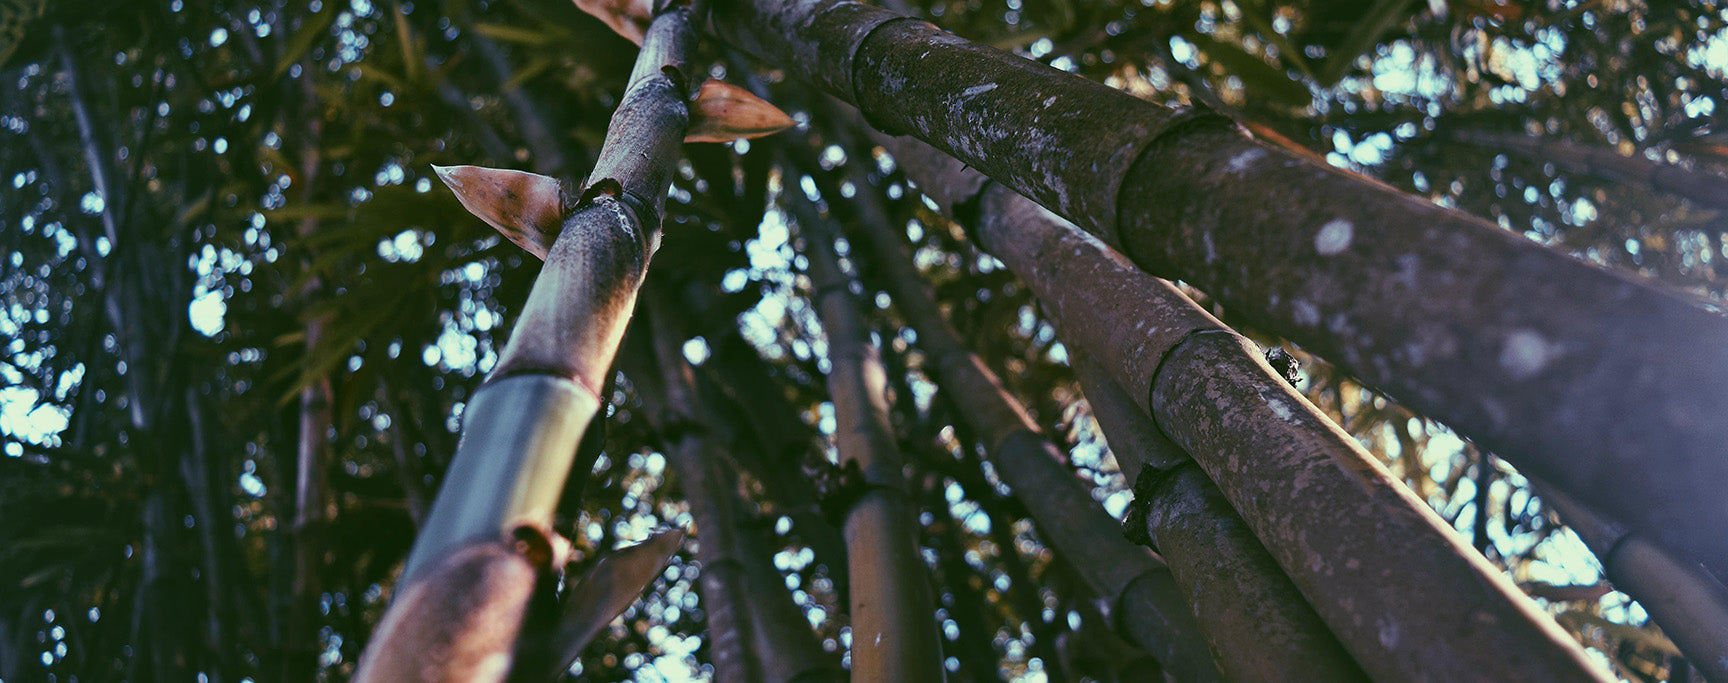 Taille bambou blog bambou calme